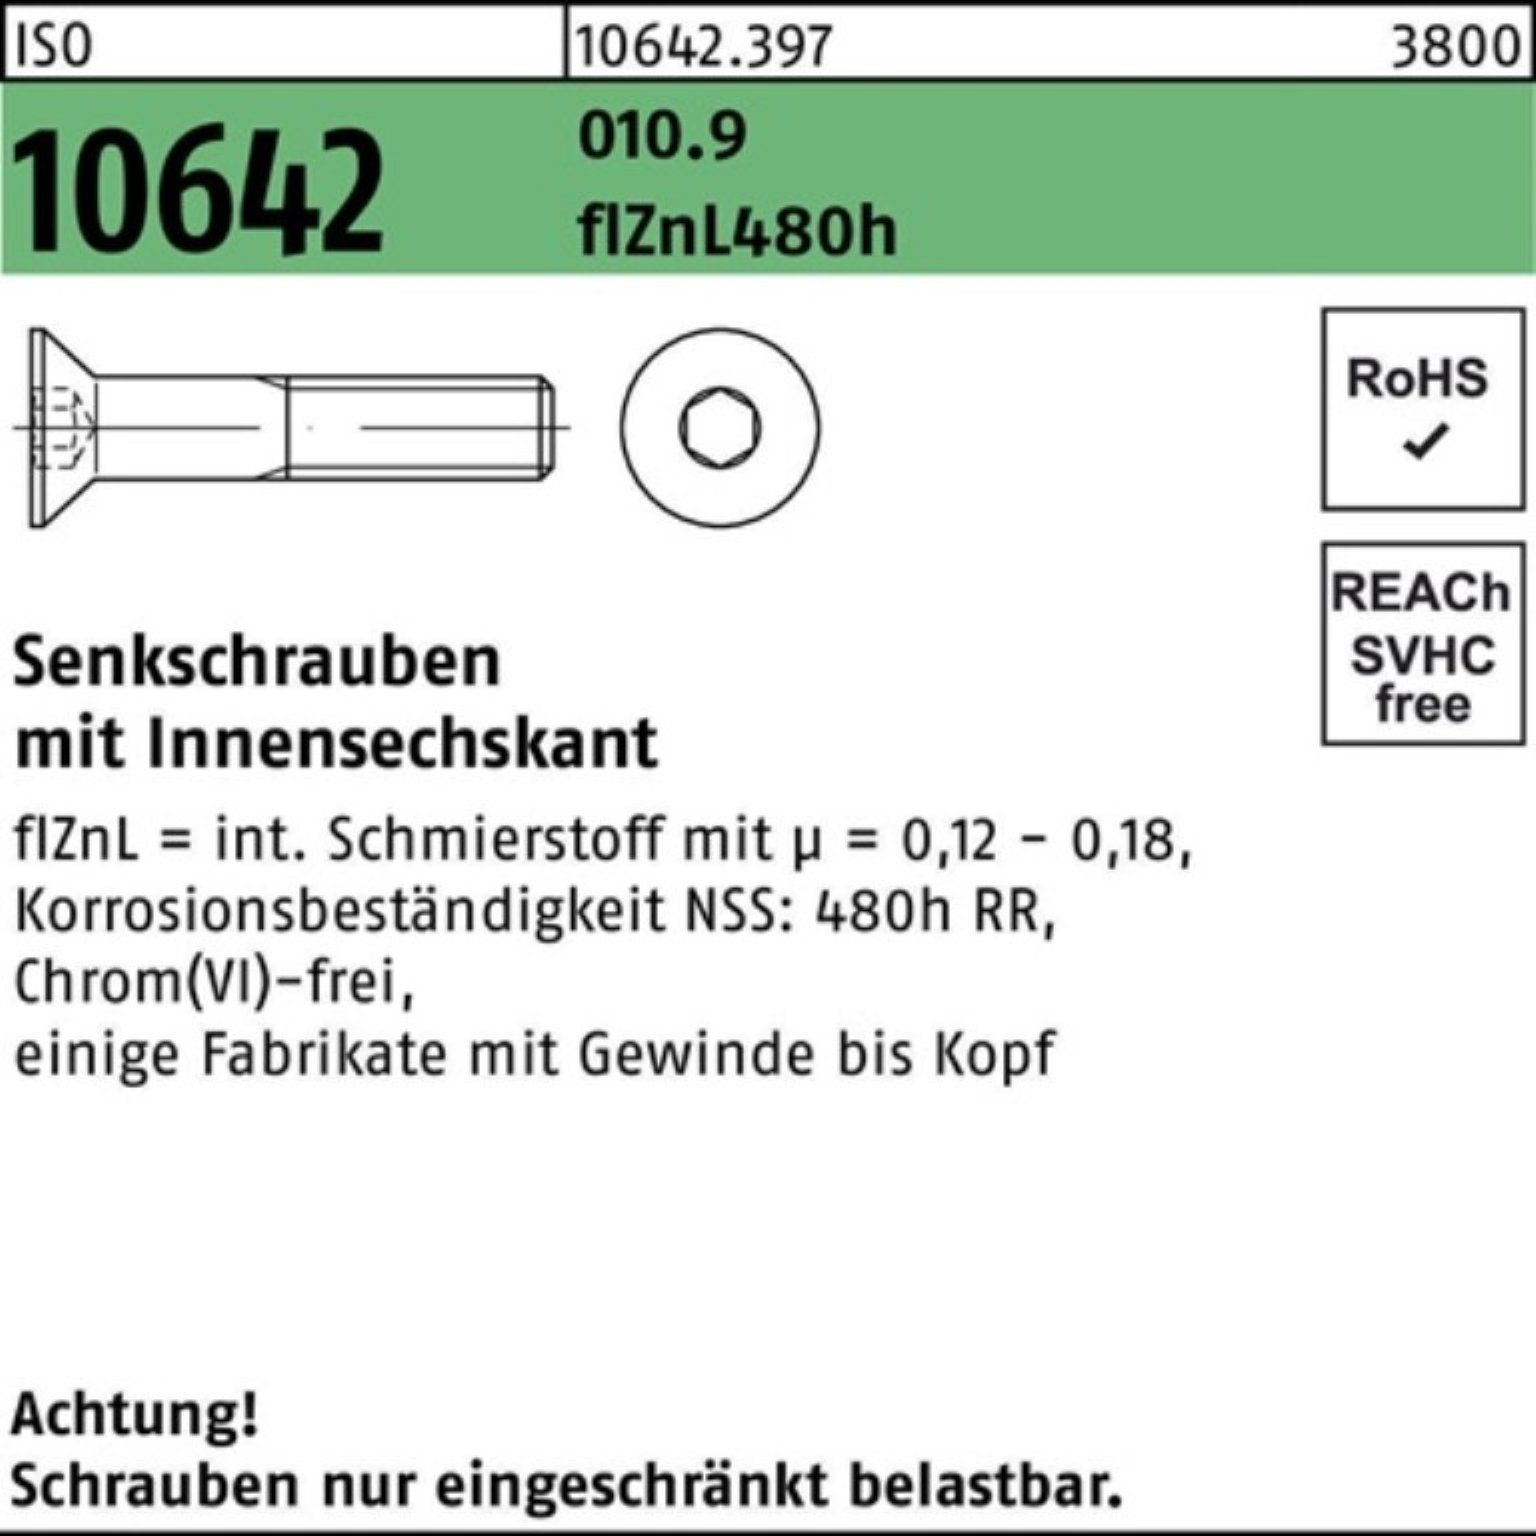 Reyher Senkschraube 200er Pack 10642 M10x20 ISO flZnL Senkschraube 480h zi 010.9 Innen-6kt